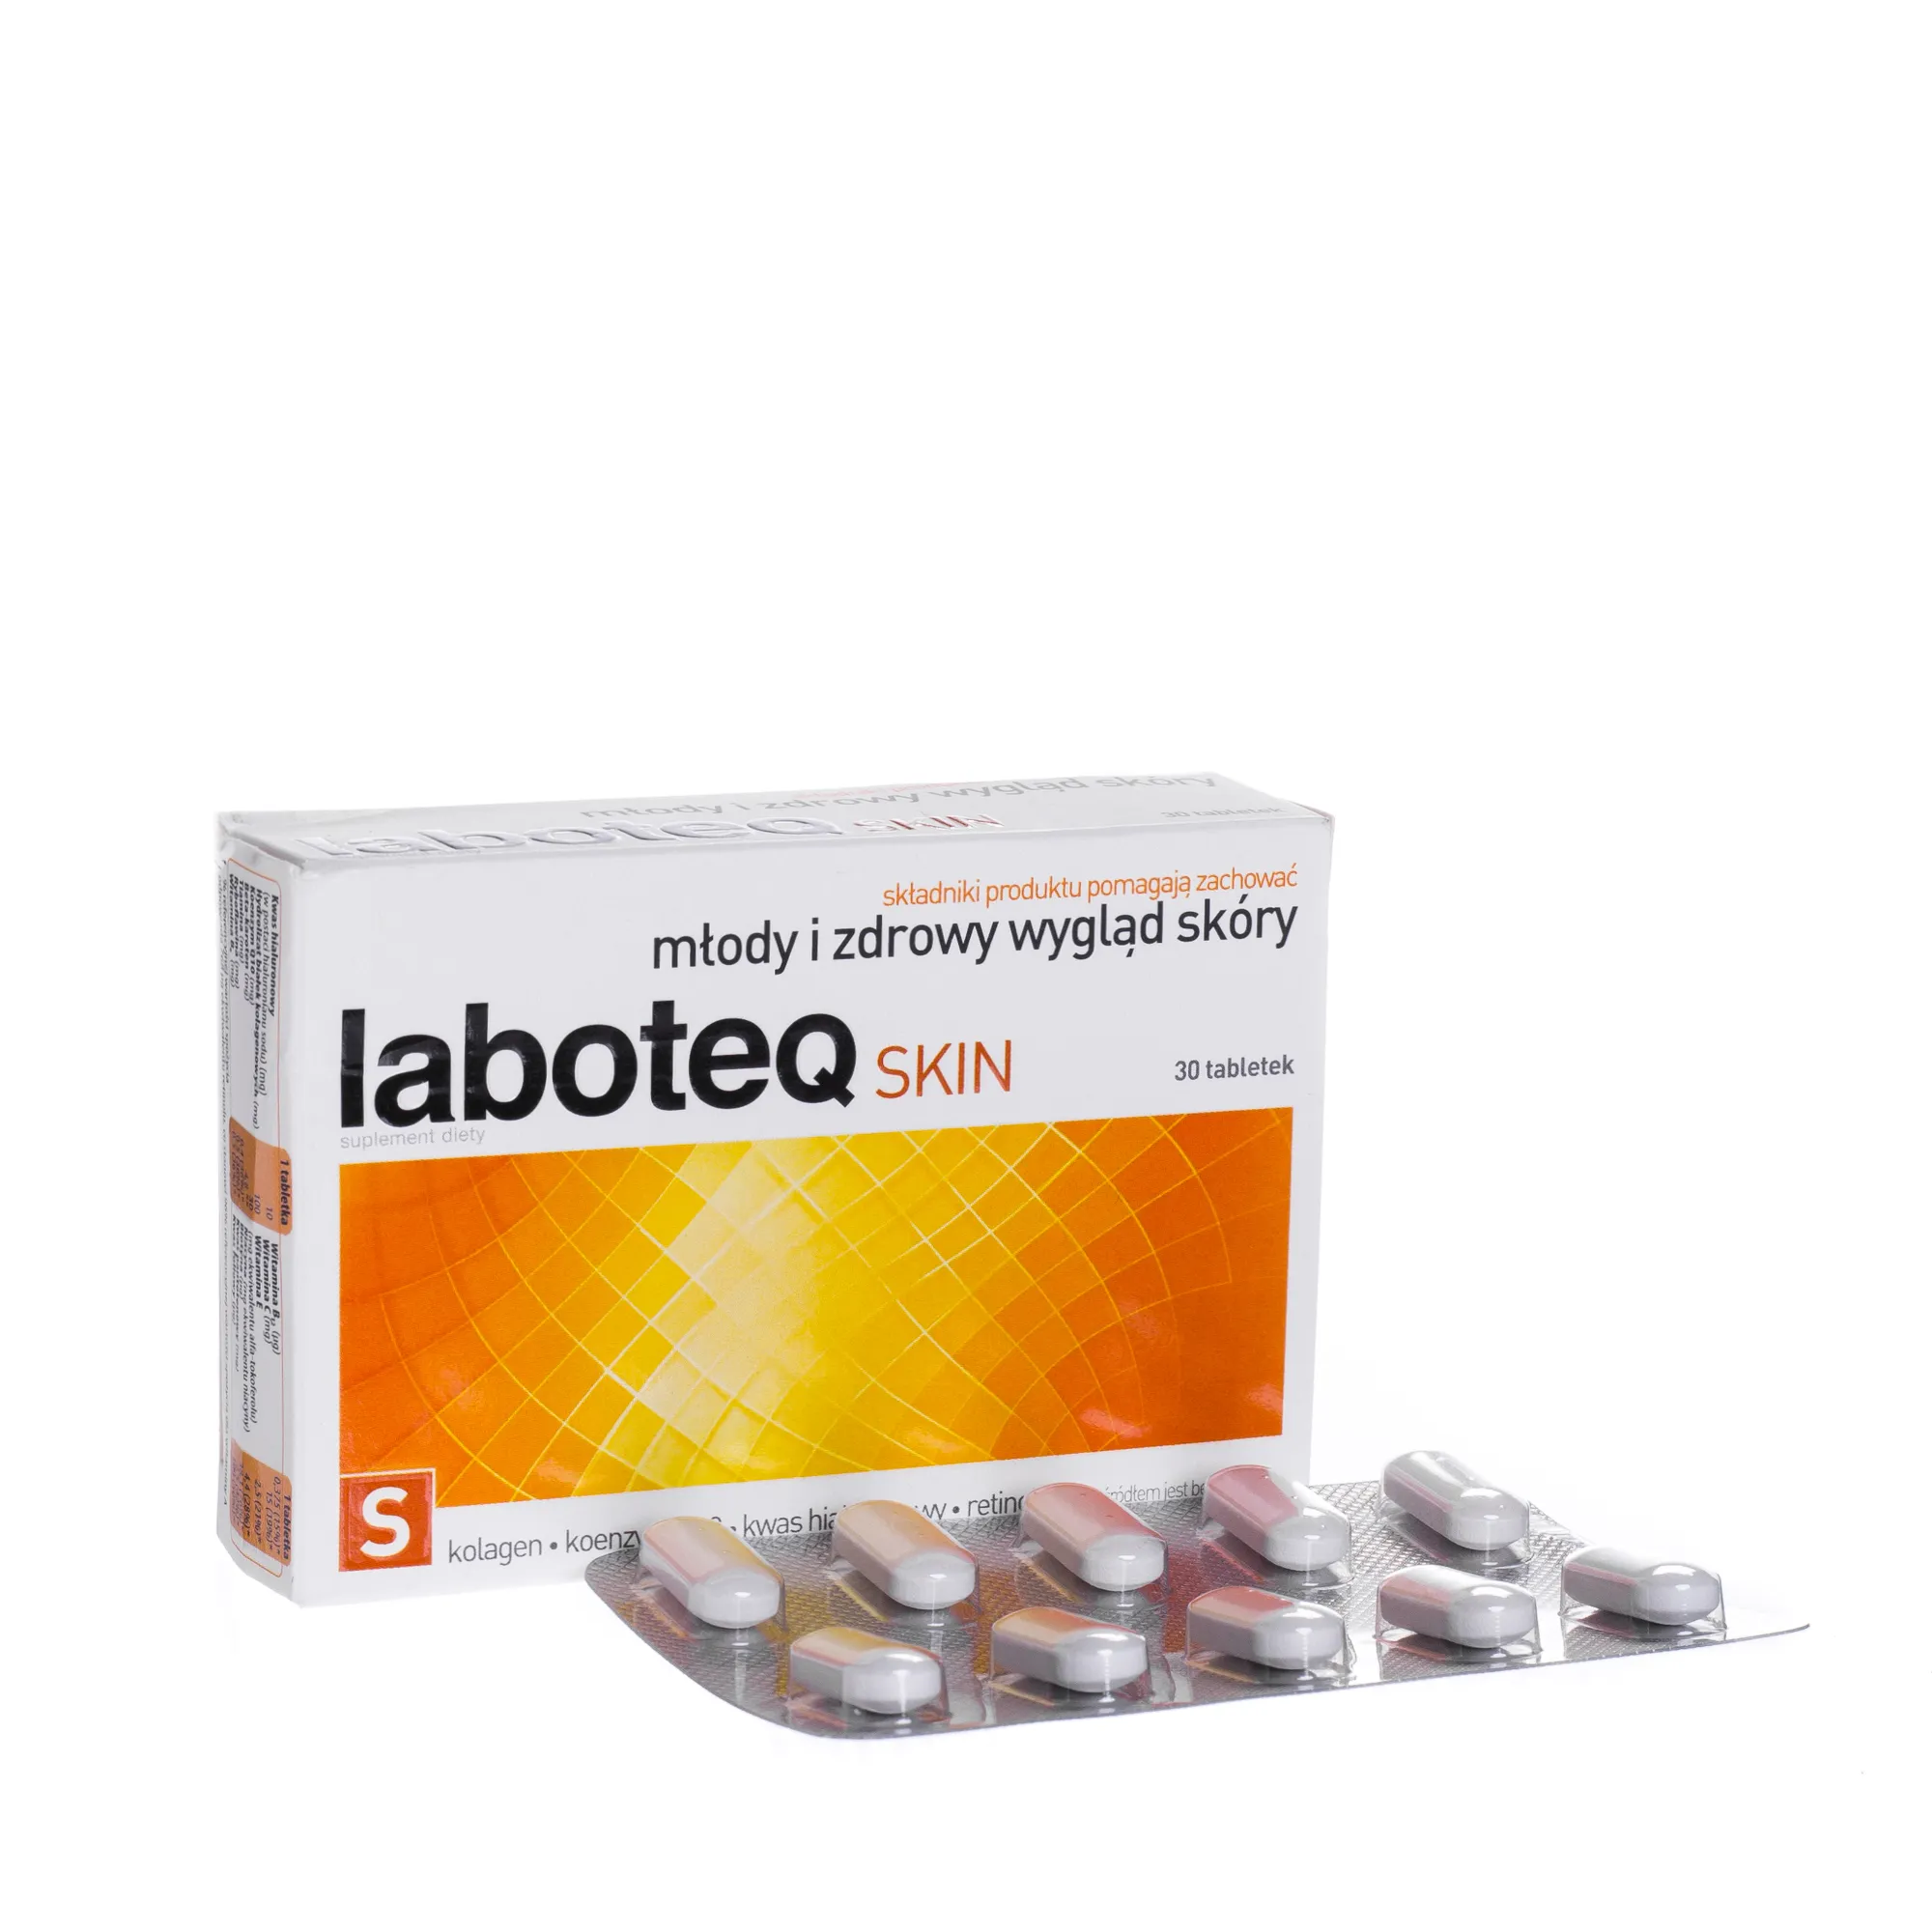 Laboteq SKIN, suplement diety 30 tabletek